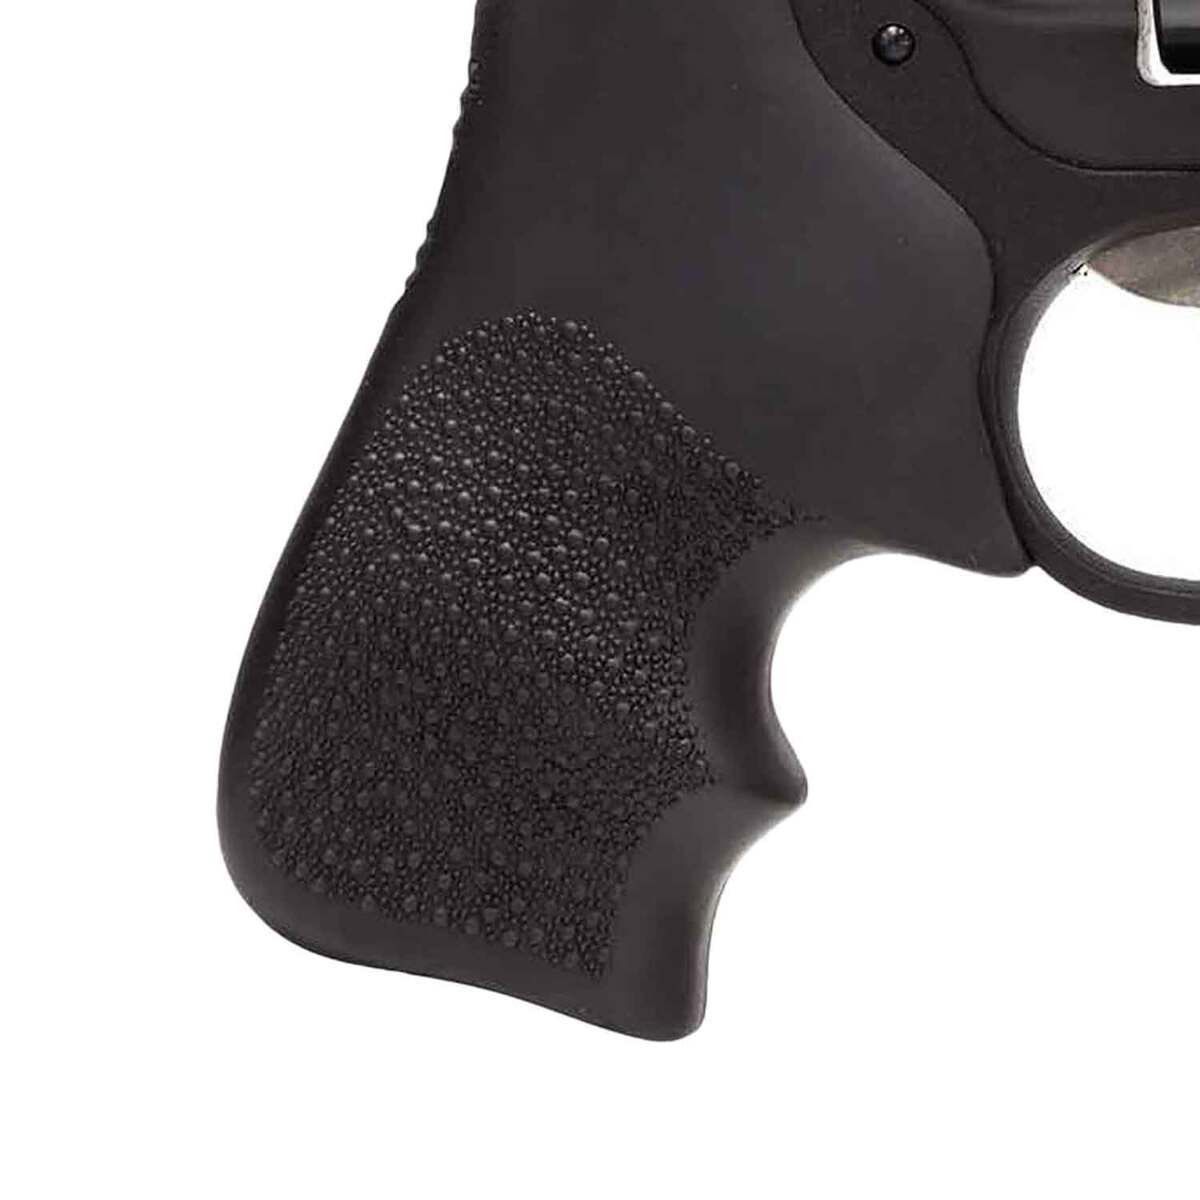 Ruger LCR 357 Magnum 1.87in Matte Black Revolver - 5 Rounds | Sportsman ...